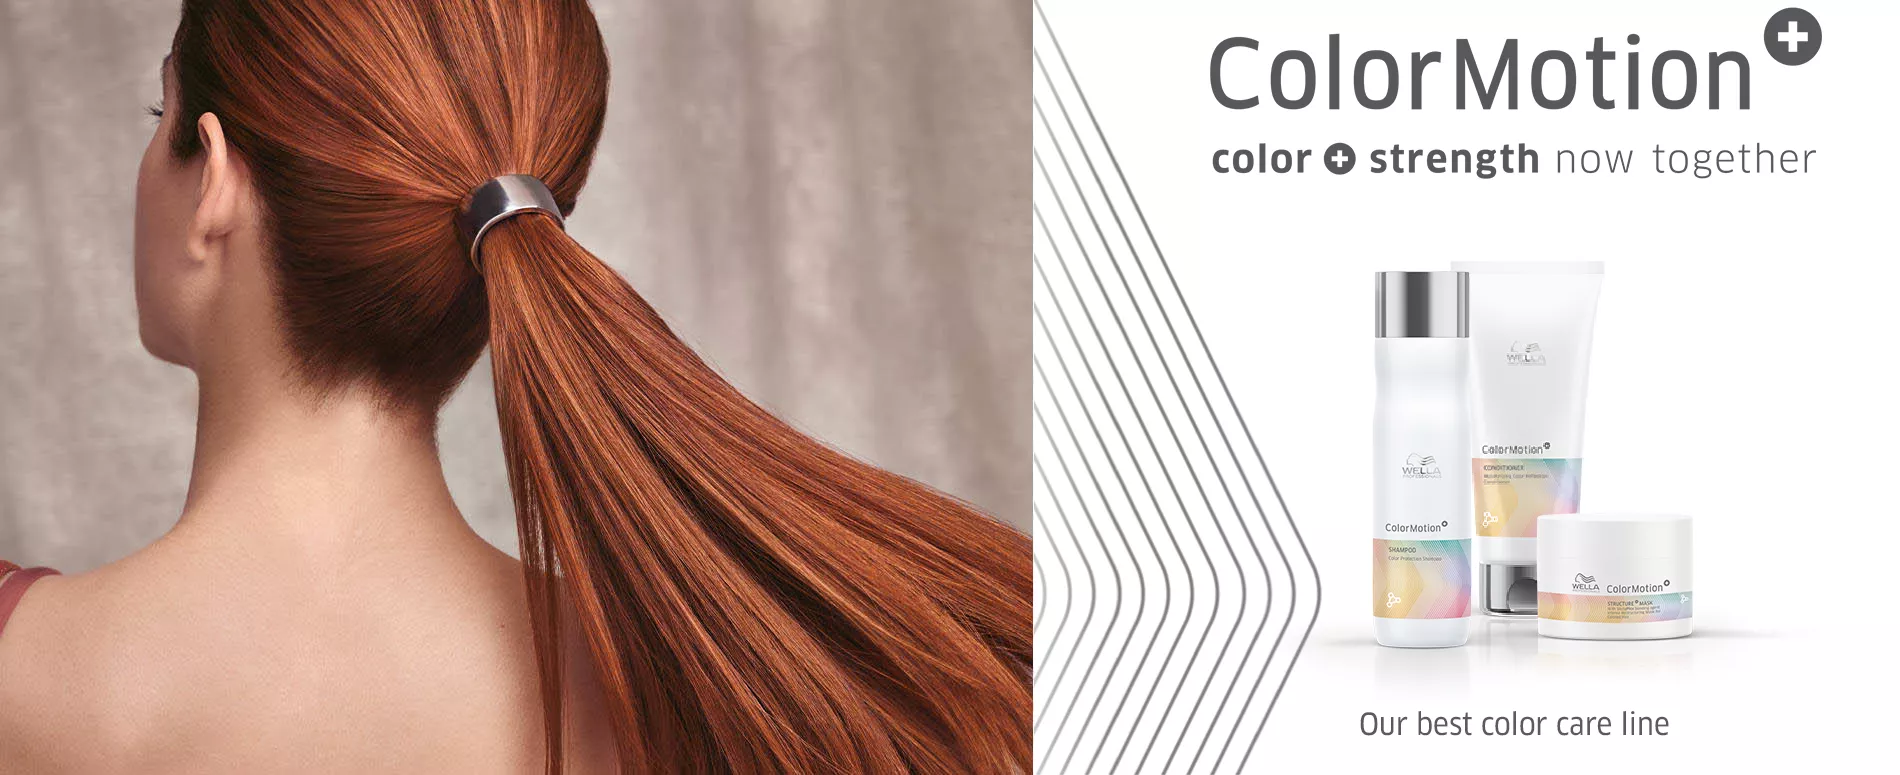 Femme aux cheveux roux attachés en queue de cheval, à côté de la nouvelle gamme de produits ColorMotion+